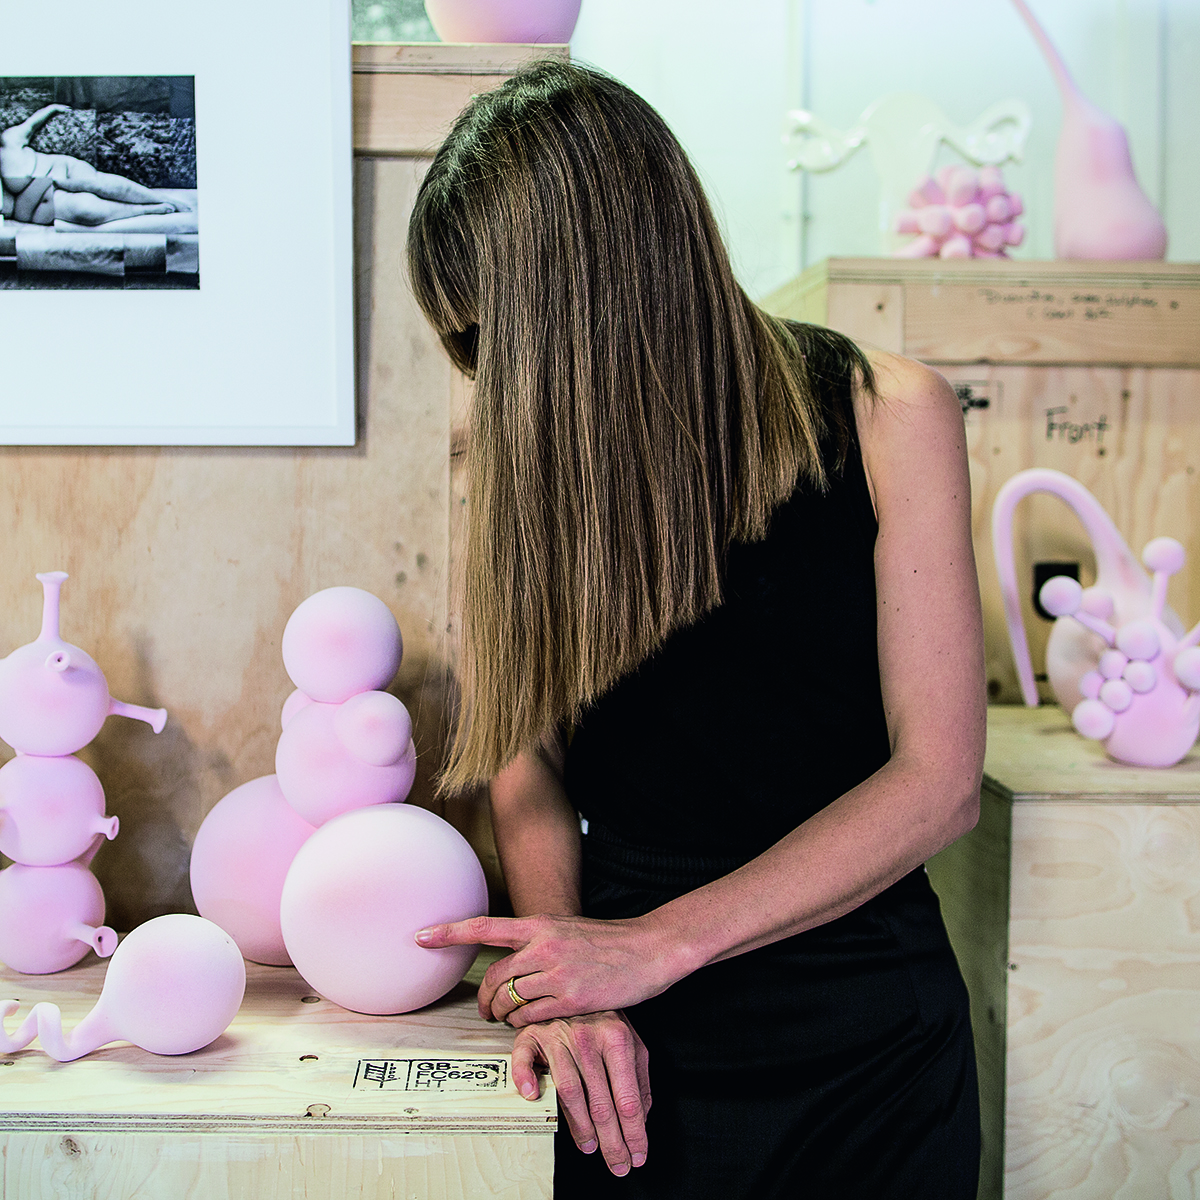 Artist touching a pink ceramic sculpture